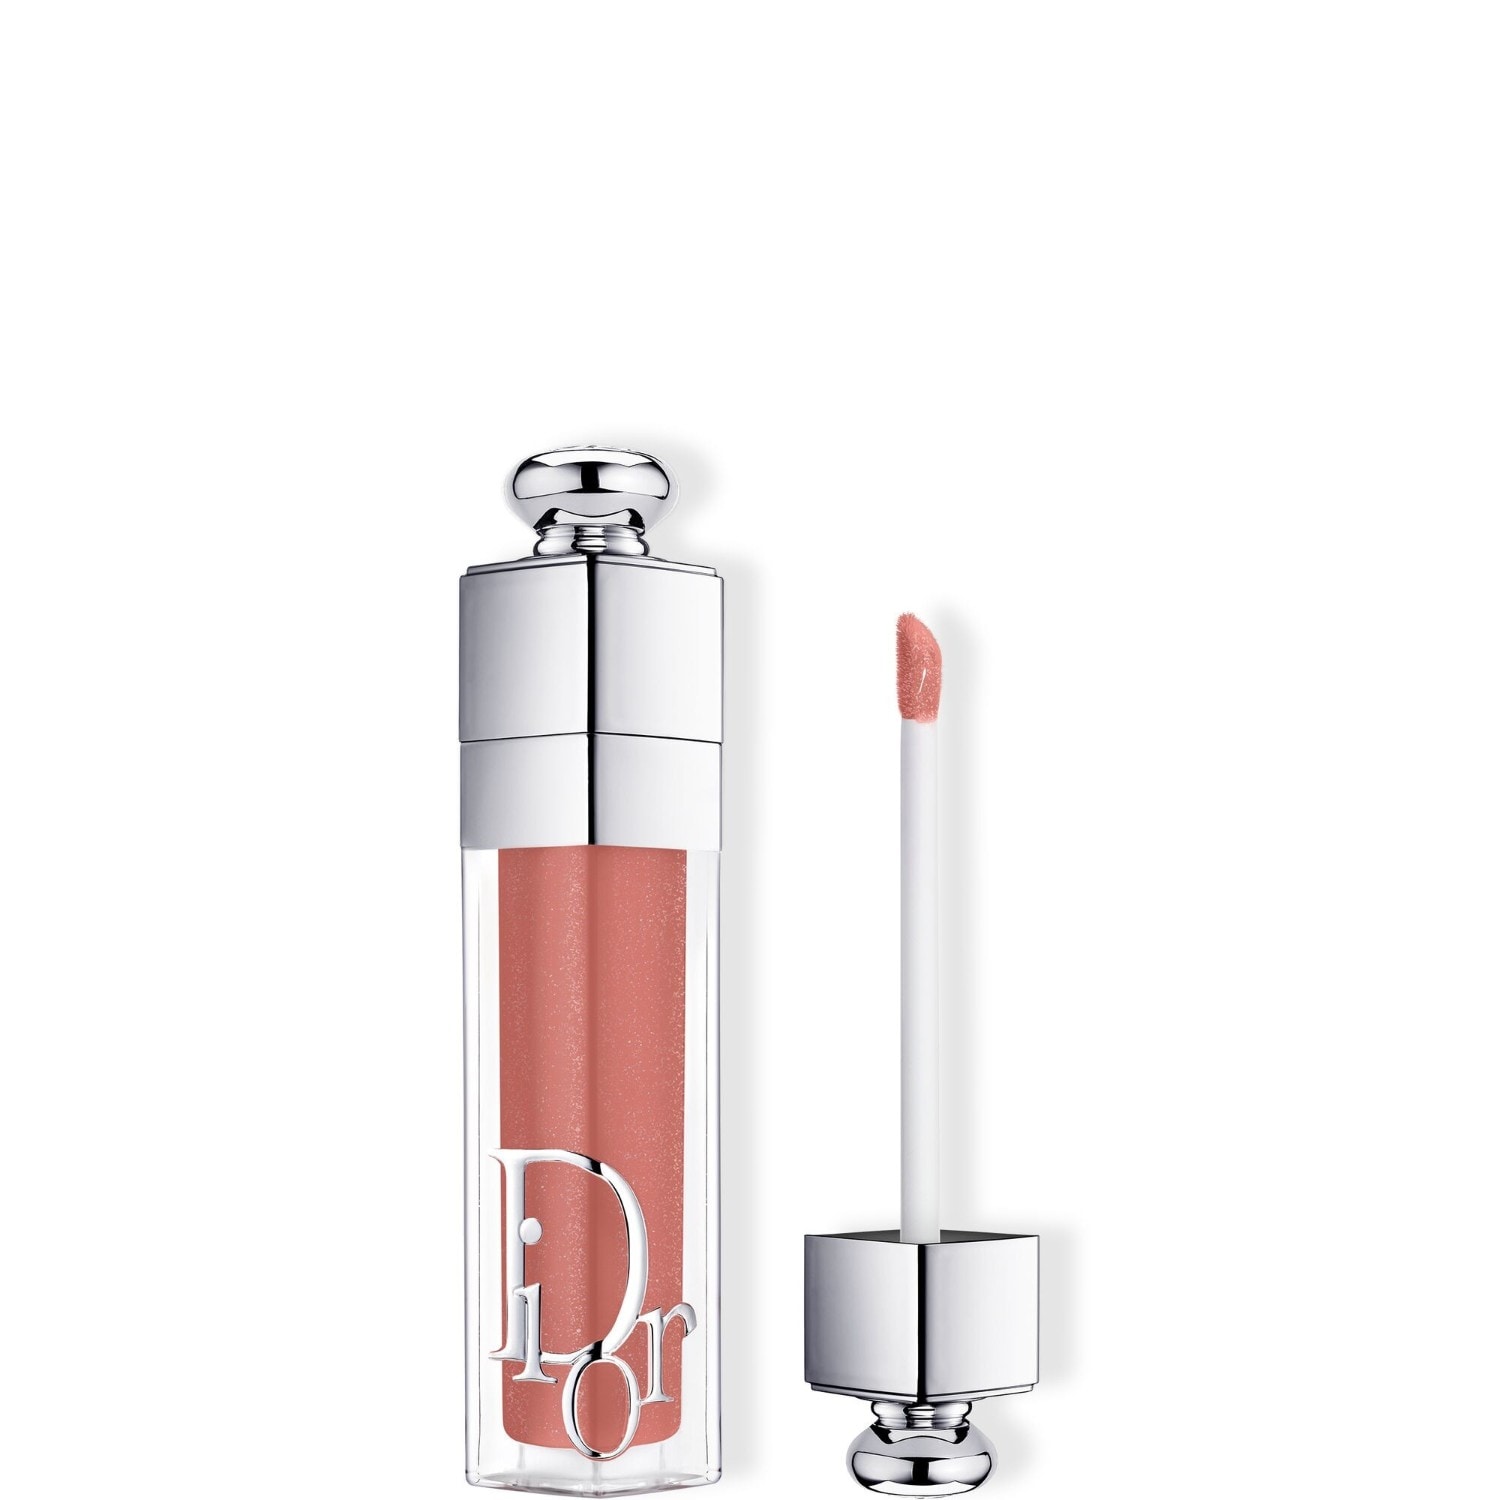 Dior Addict Lip Maximizer, 038 Rose Nude